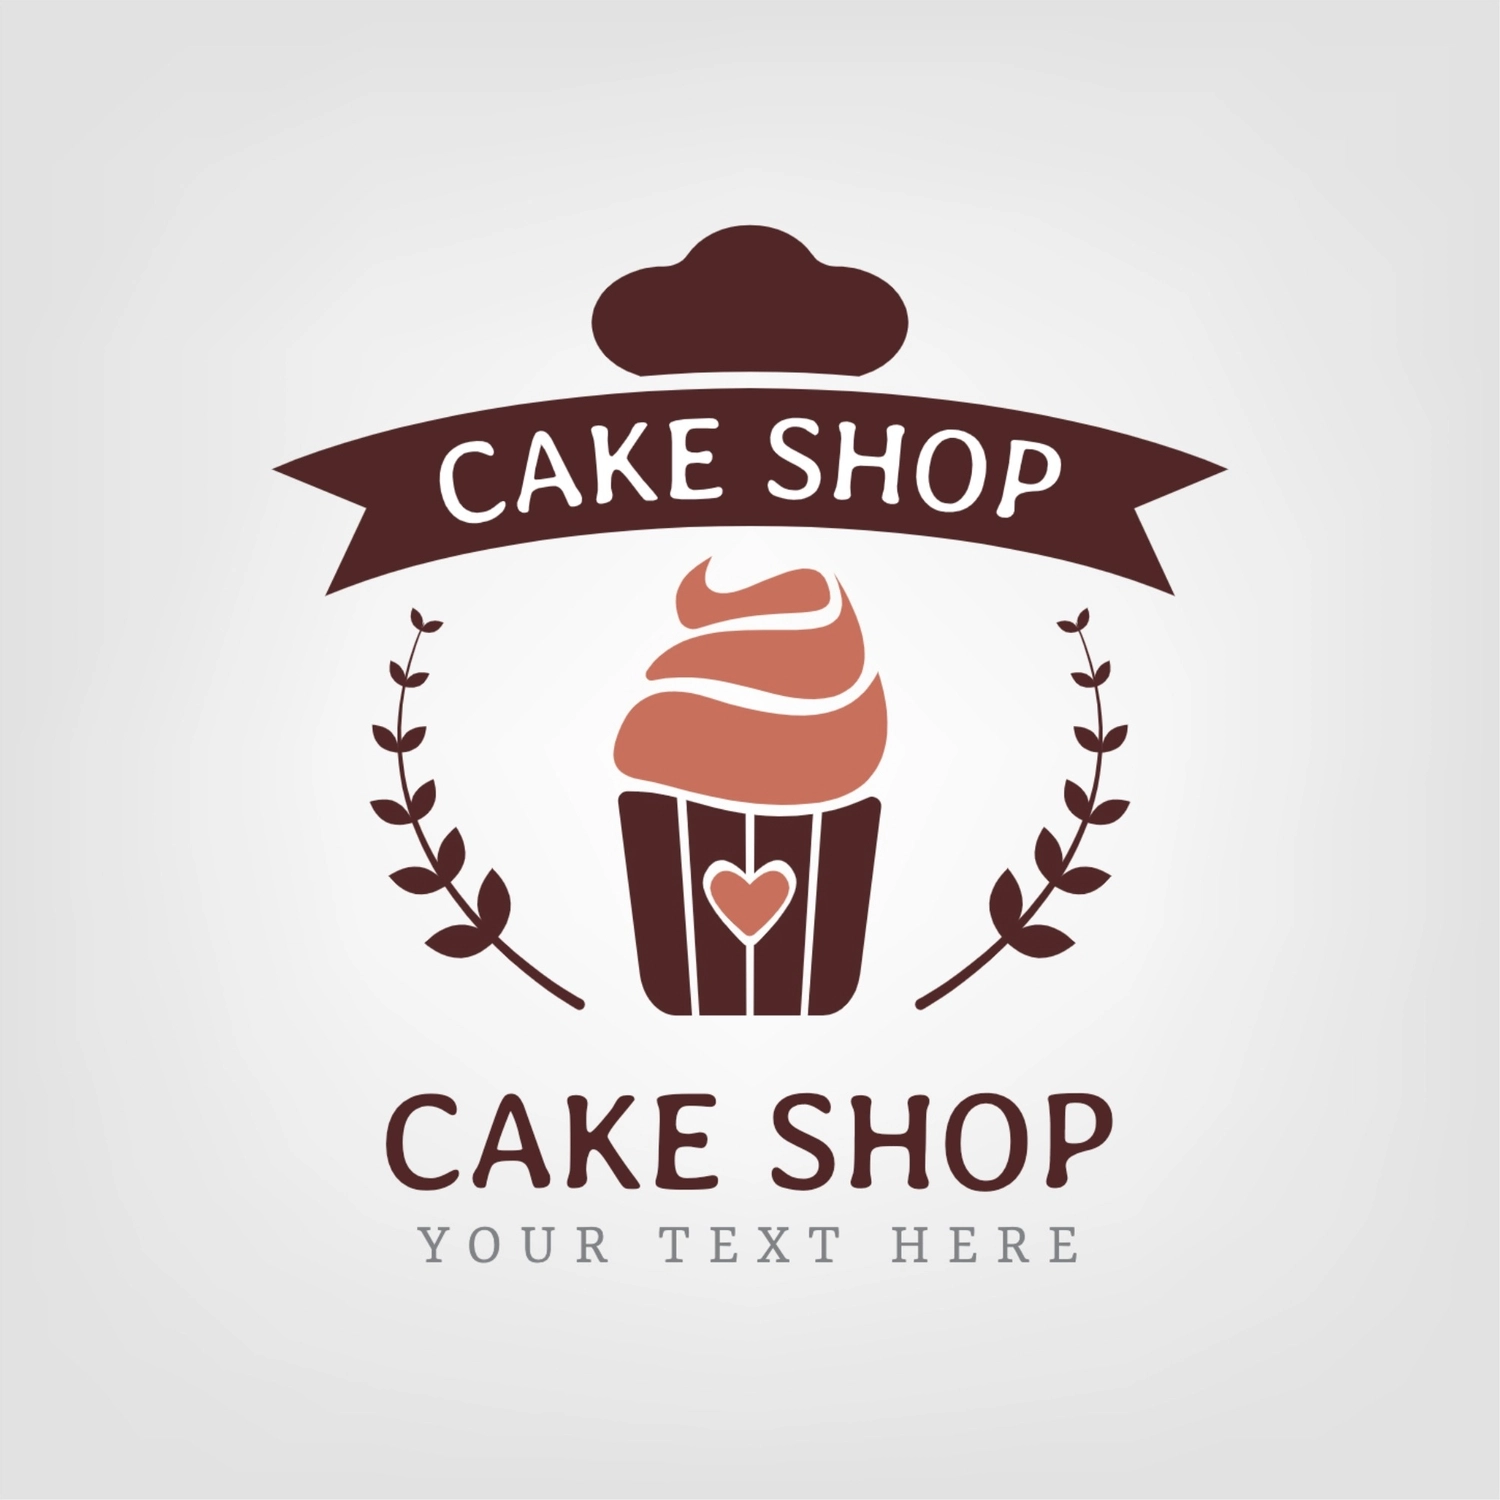 ケーキ屋のロゴ, 茶色, 作成, デザイン, ロゴテンプレート